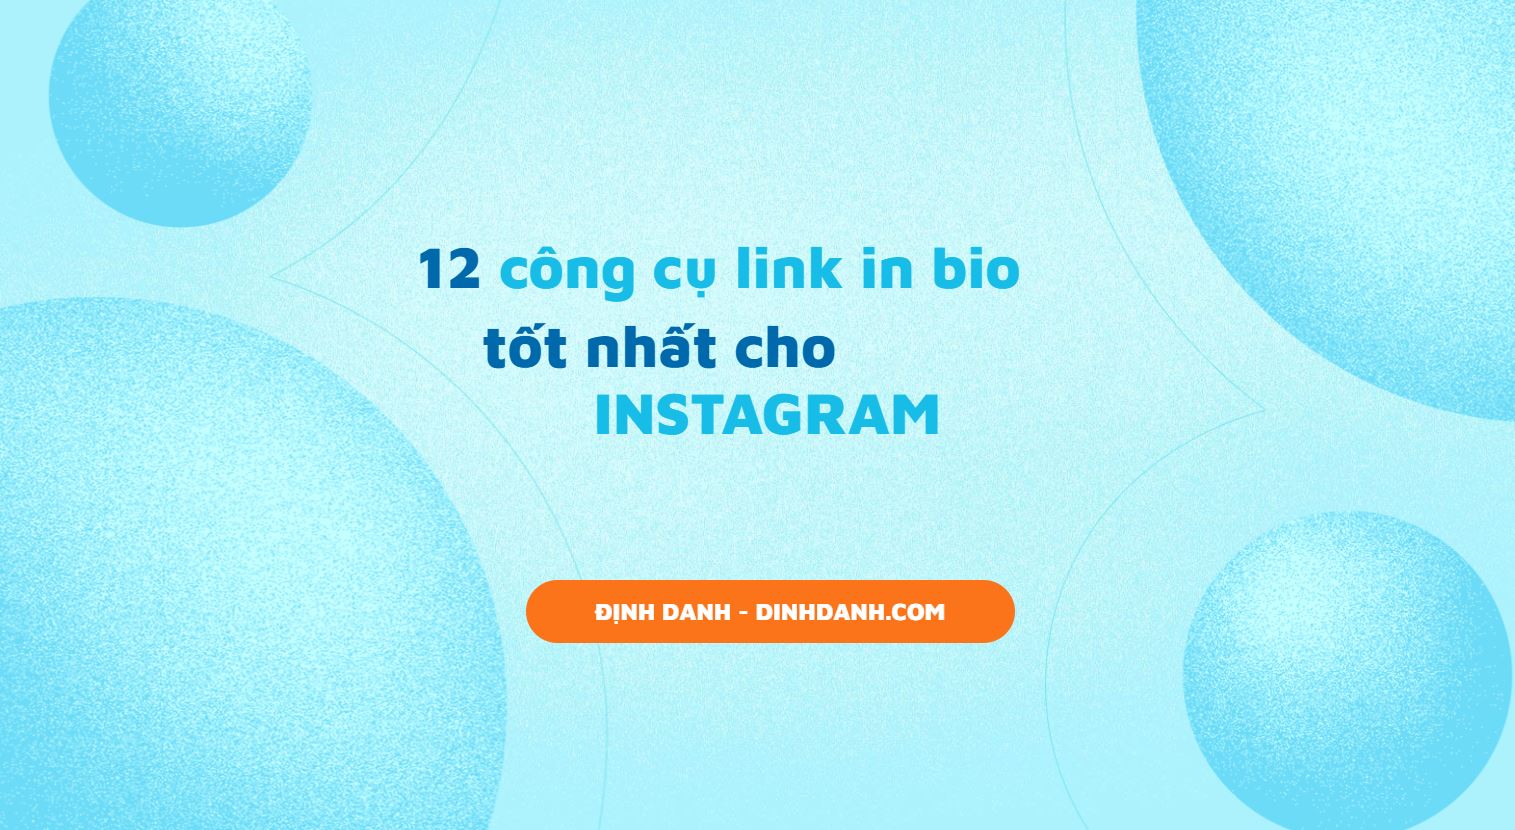 12 công cụ tốt nhất cho link in bio instagram